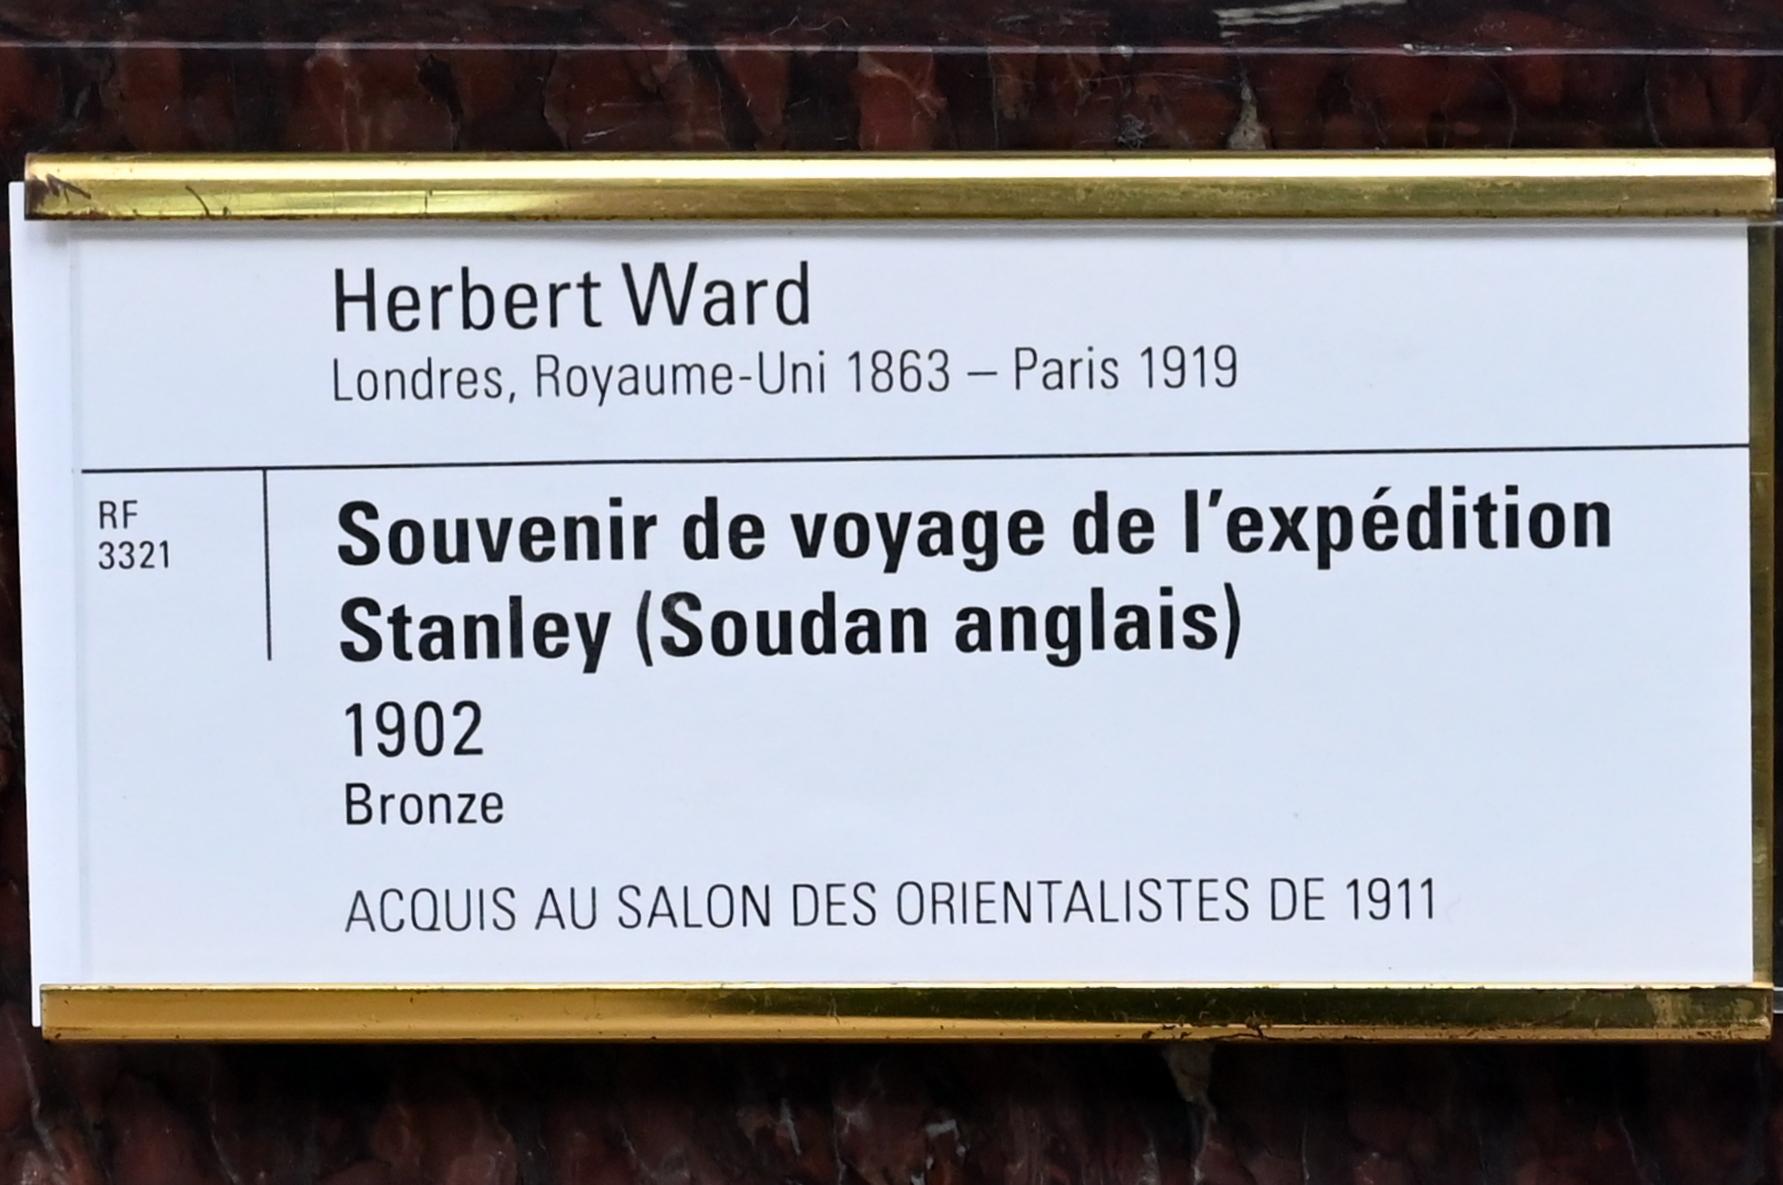 Herbert Ward (1902), Reisesouvenir von der Stanley-Expedition (englischer Sudan), Paris, Musée d’Orsay, 1902, Bild 4/4